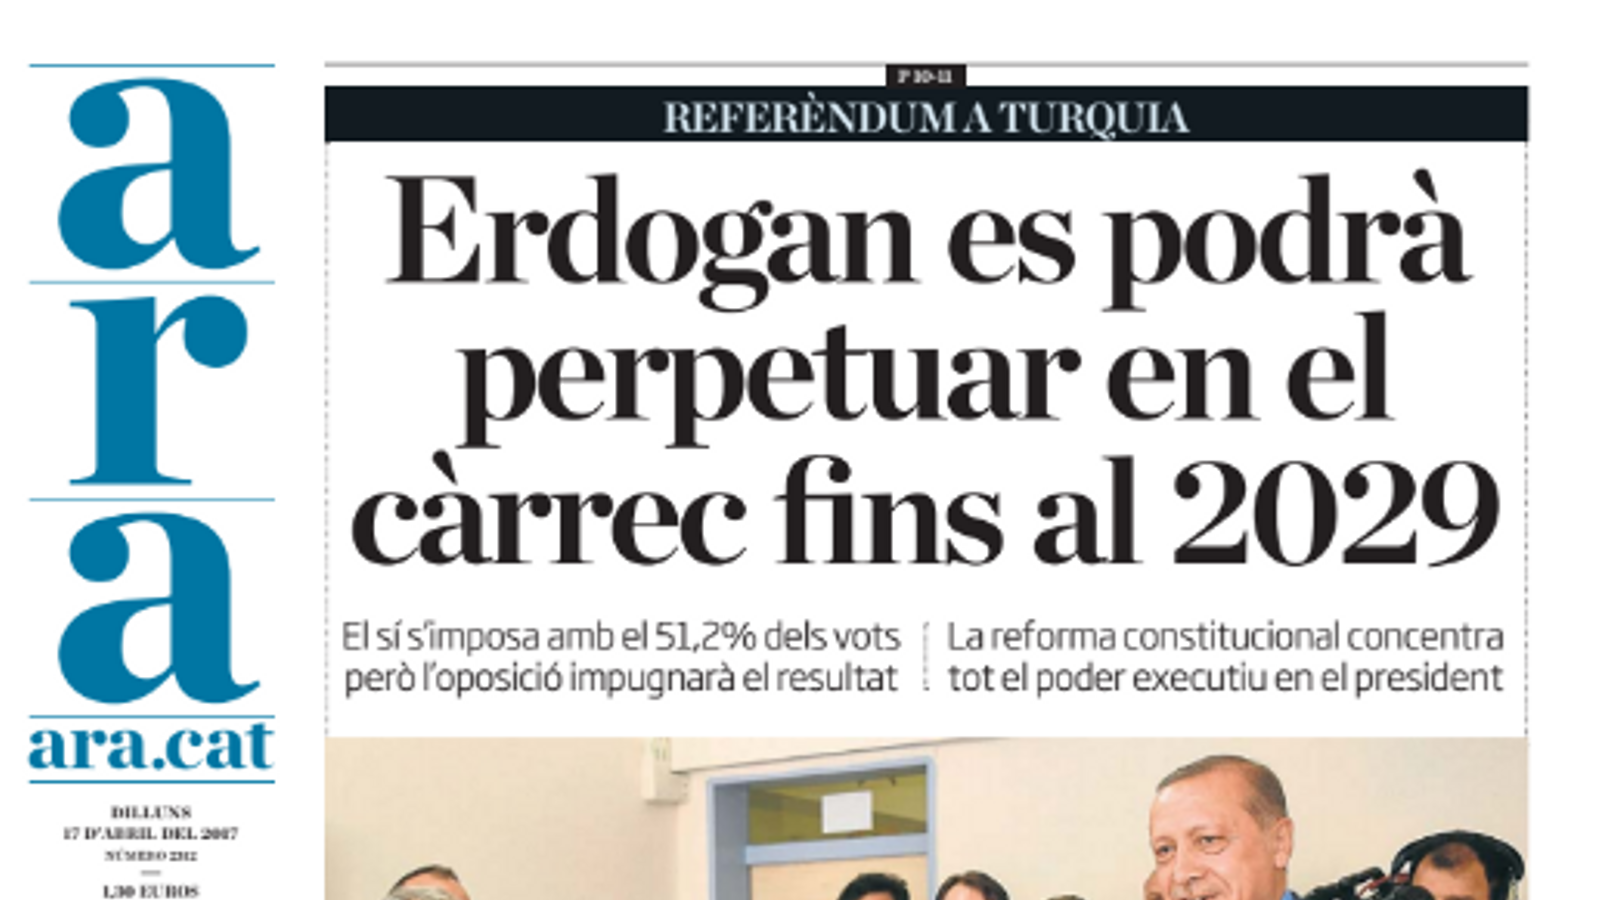 "Erdogan es podrà perpetuar en el càrrec fins el 2029", portada de l'ARA d'aquest dilluns